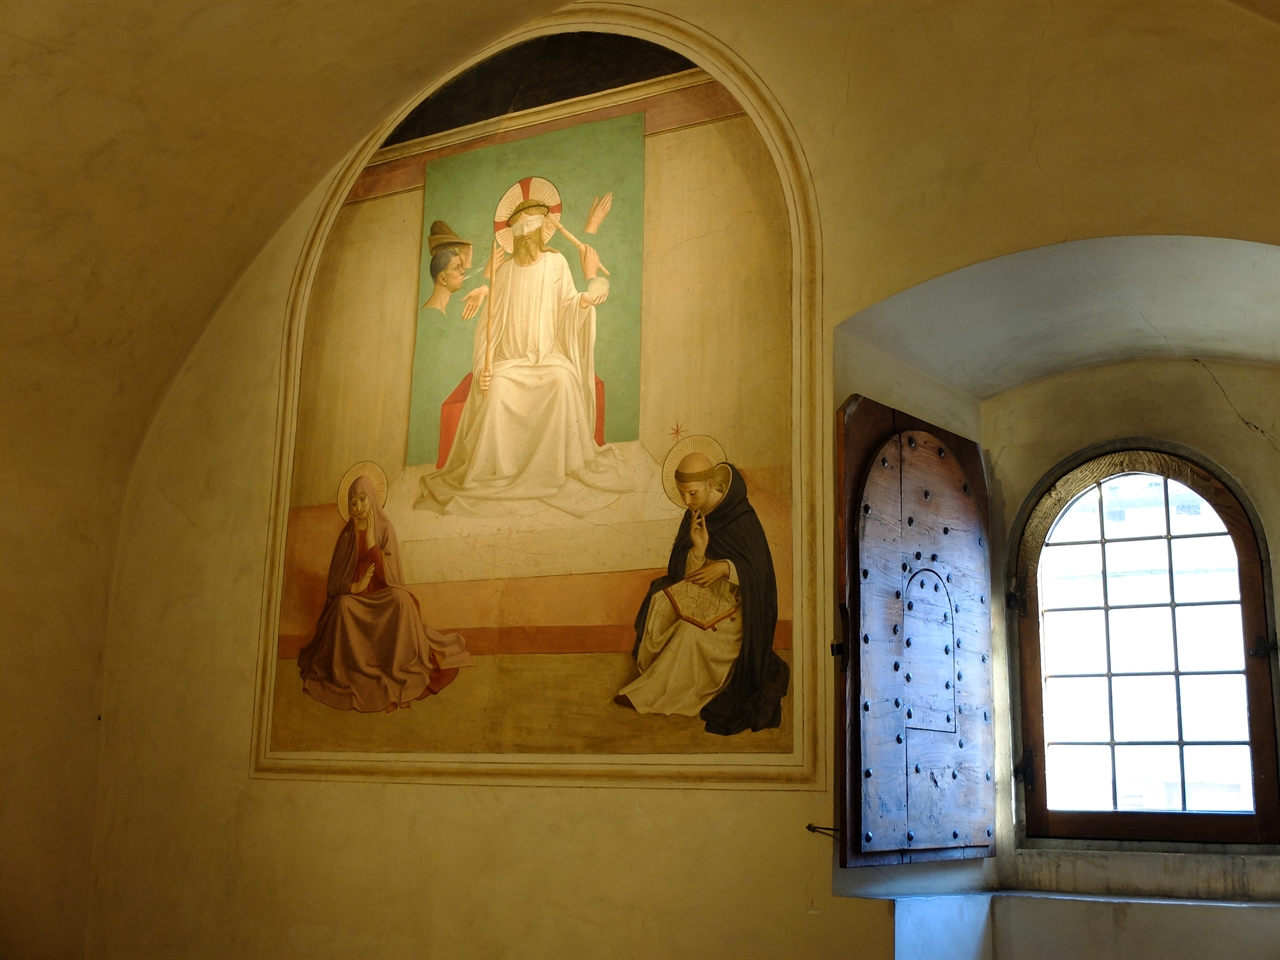 프라 안젤리코 '조롱당하는 예수', 피렌체 산 마르코 수도원. 수도사들을 위로하는 것은 저토록 간결한 프라 안젤리코의 그림과 작은 창문 하나 뿐입니다. 